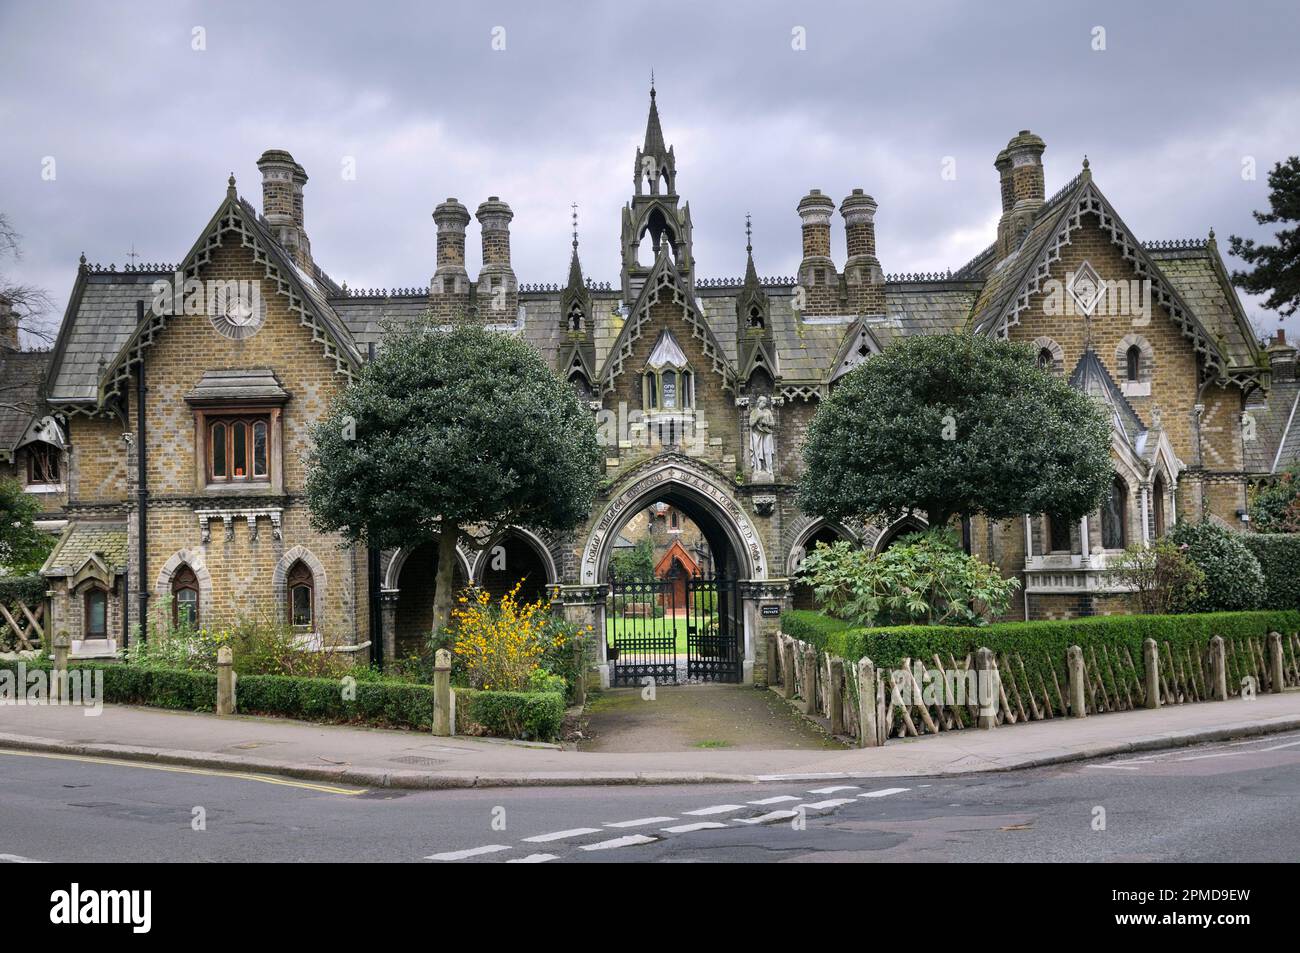 Holly Village, Highgate, Londres, Royaume-Uni. Classée grade II victorienne gothique construite en 1865 pour Angela Burdett-Coutts la deuxième femme la plus riche d'Angleterre. Banque D'Images